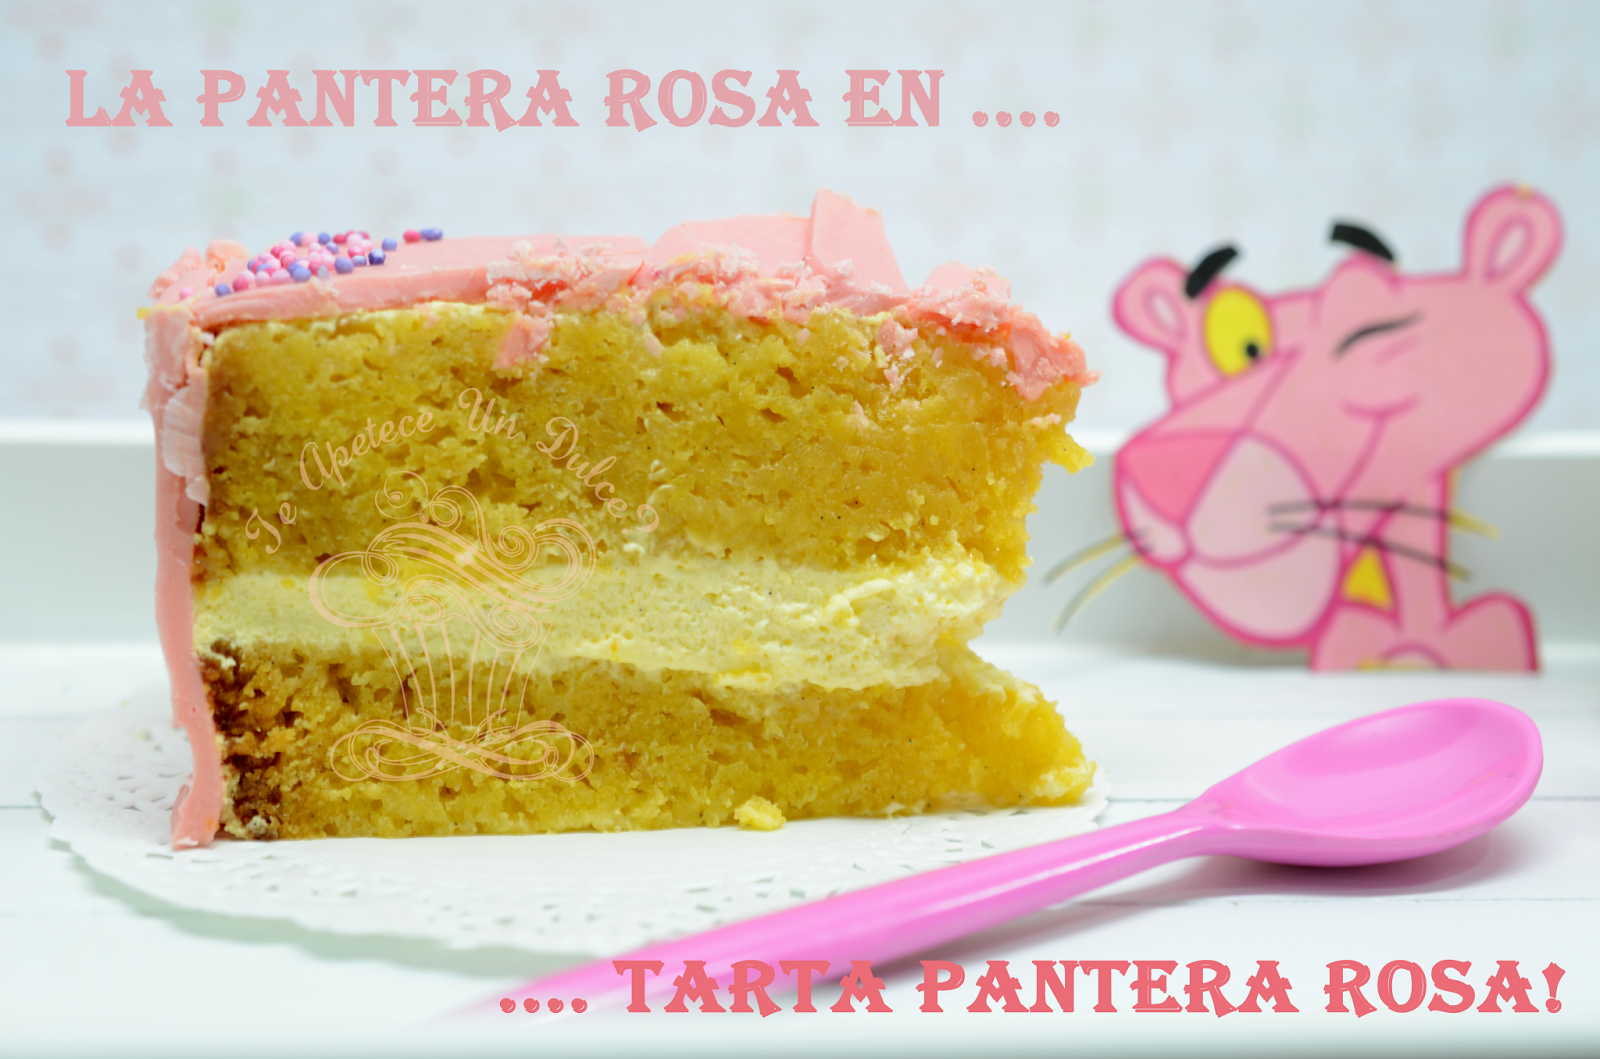 Tarta pantera rosa